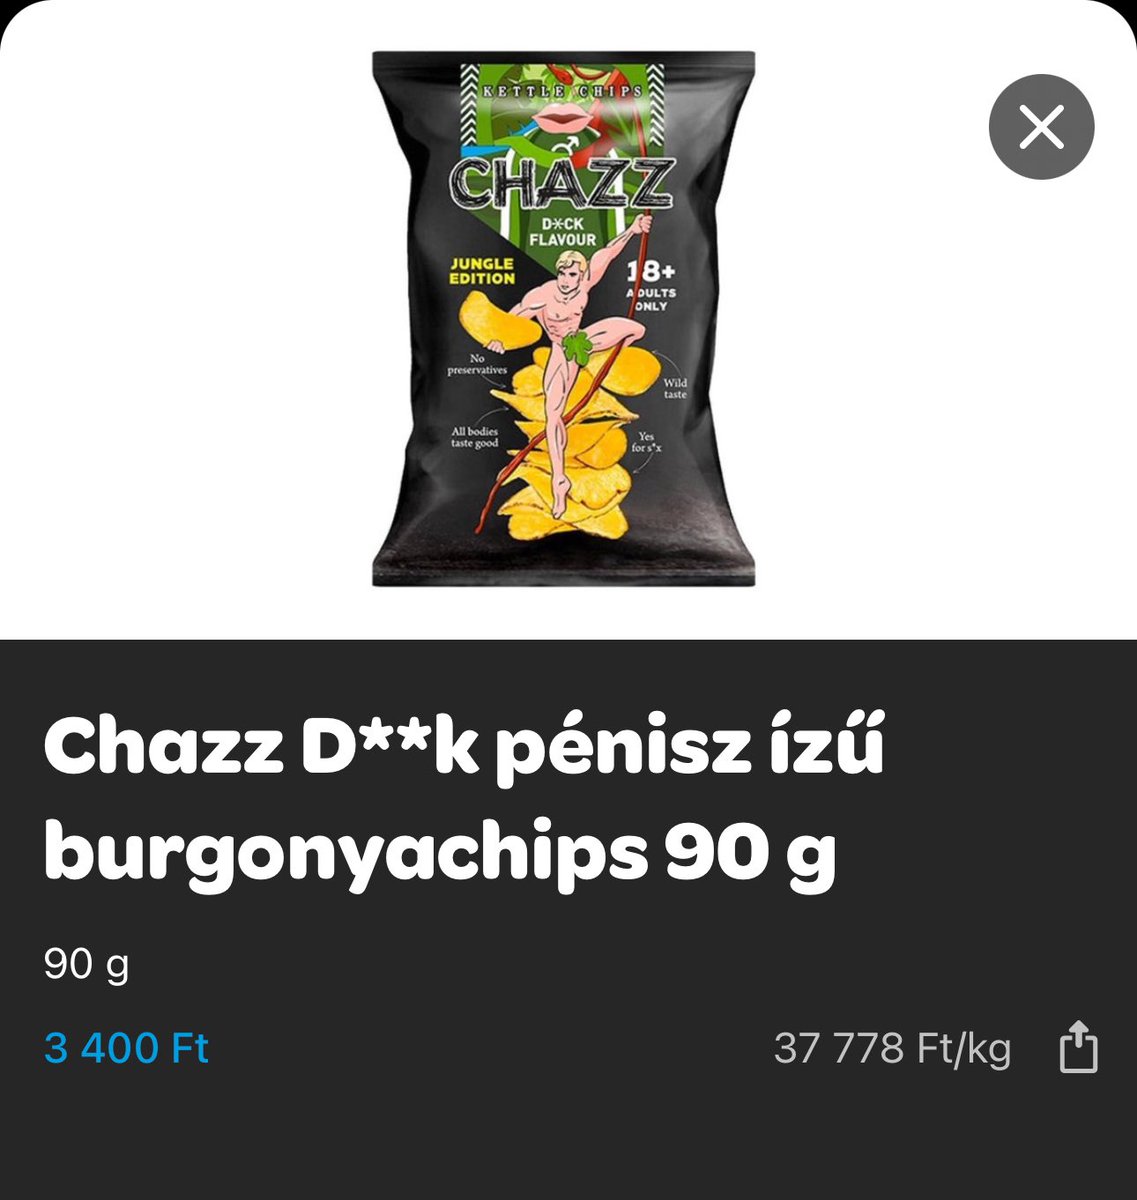 “pénisz ízű burgonyachips”